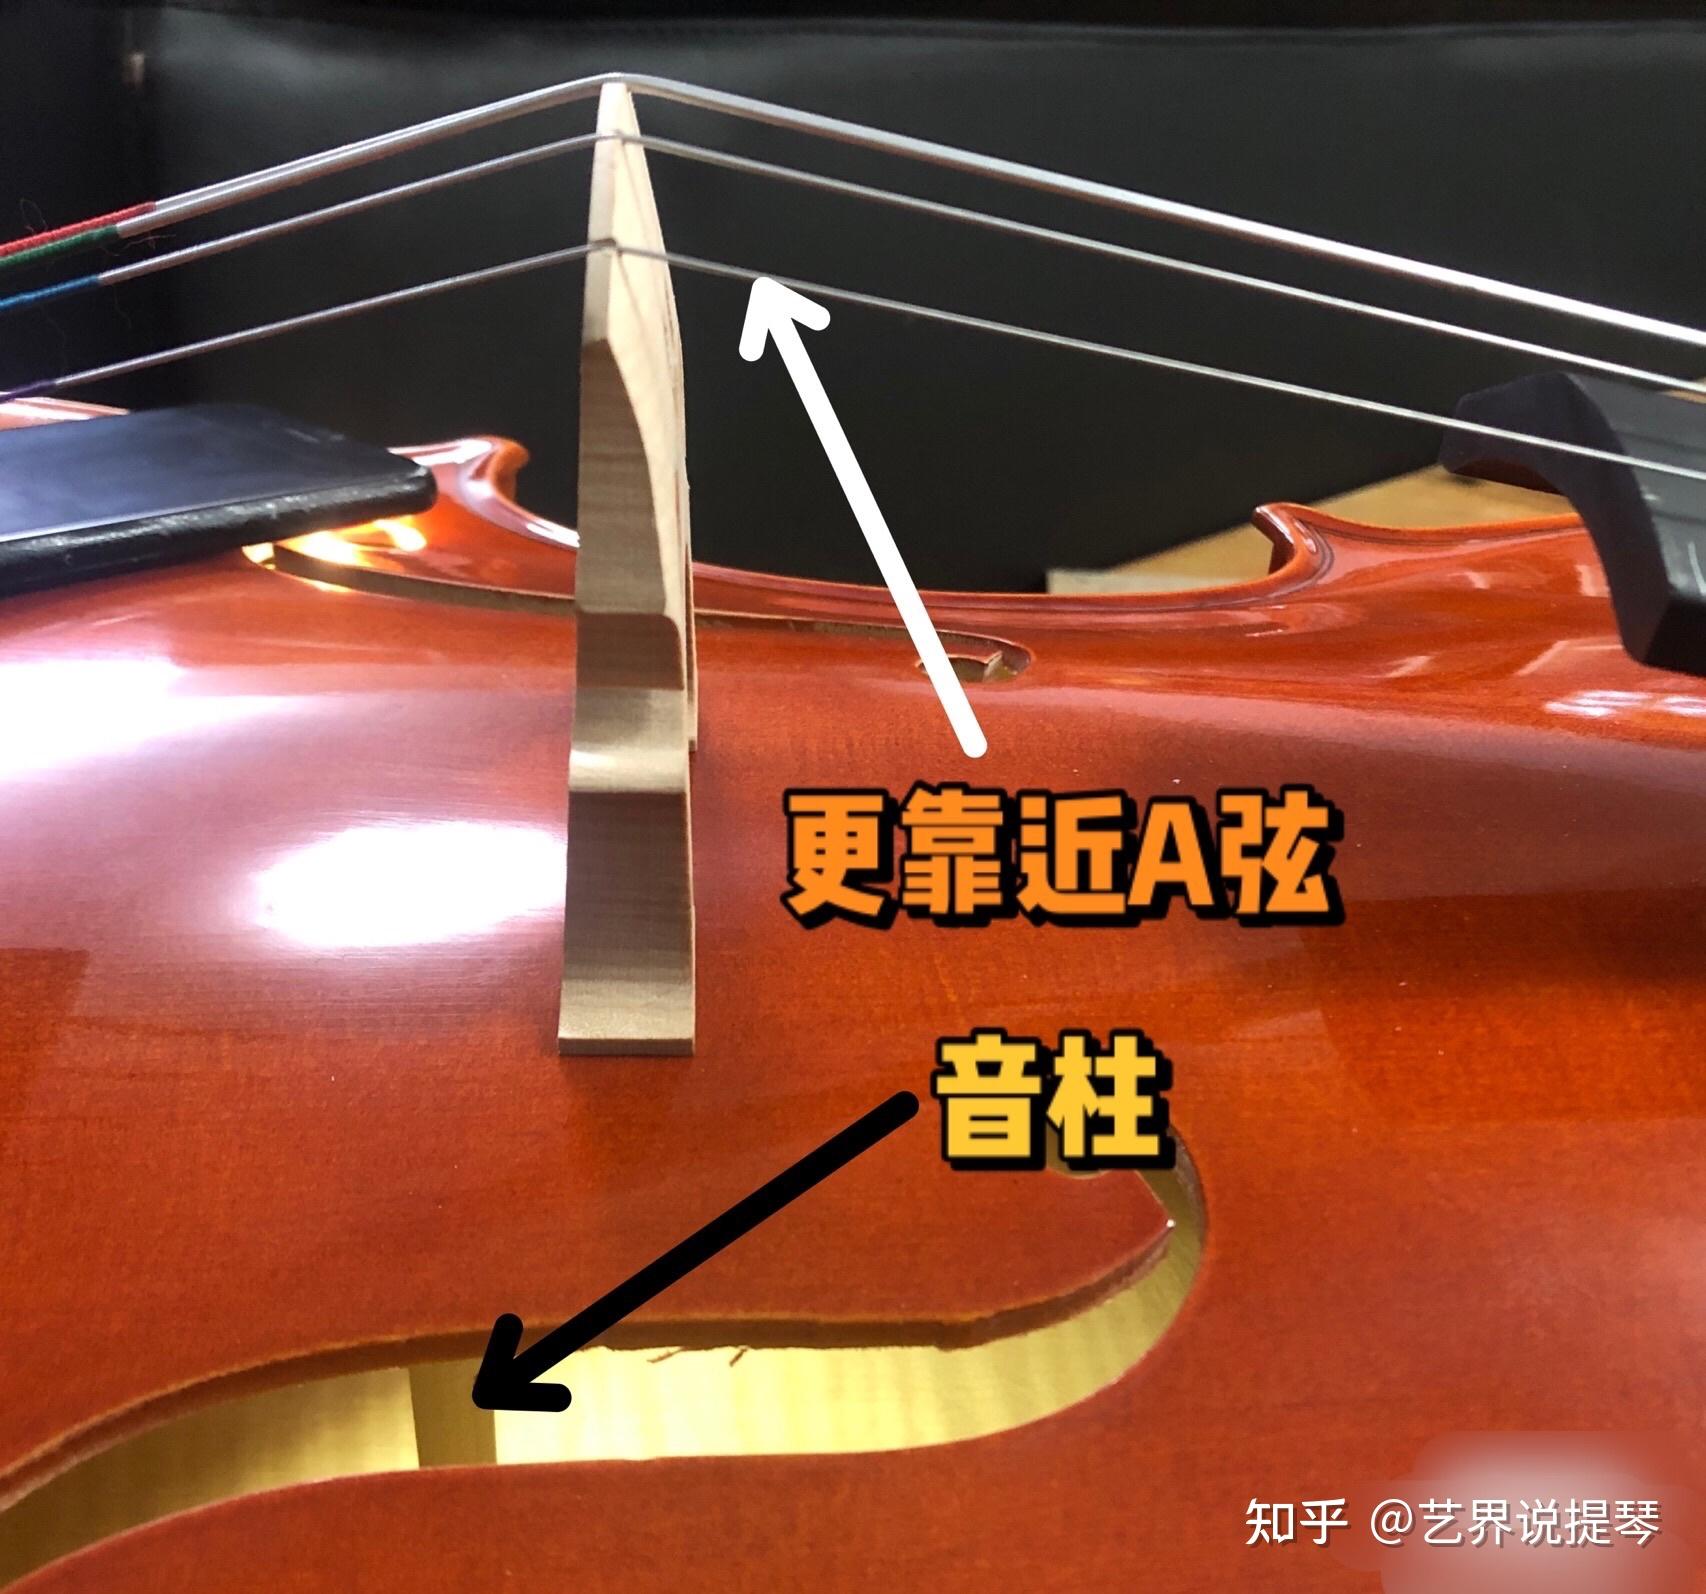 小提琴音柱安装位置图图片